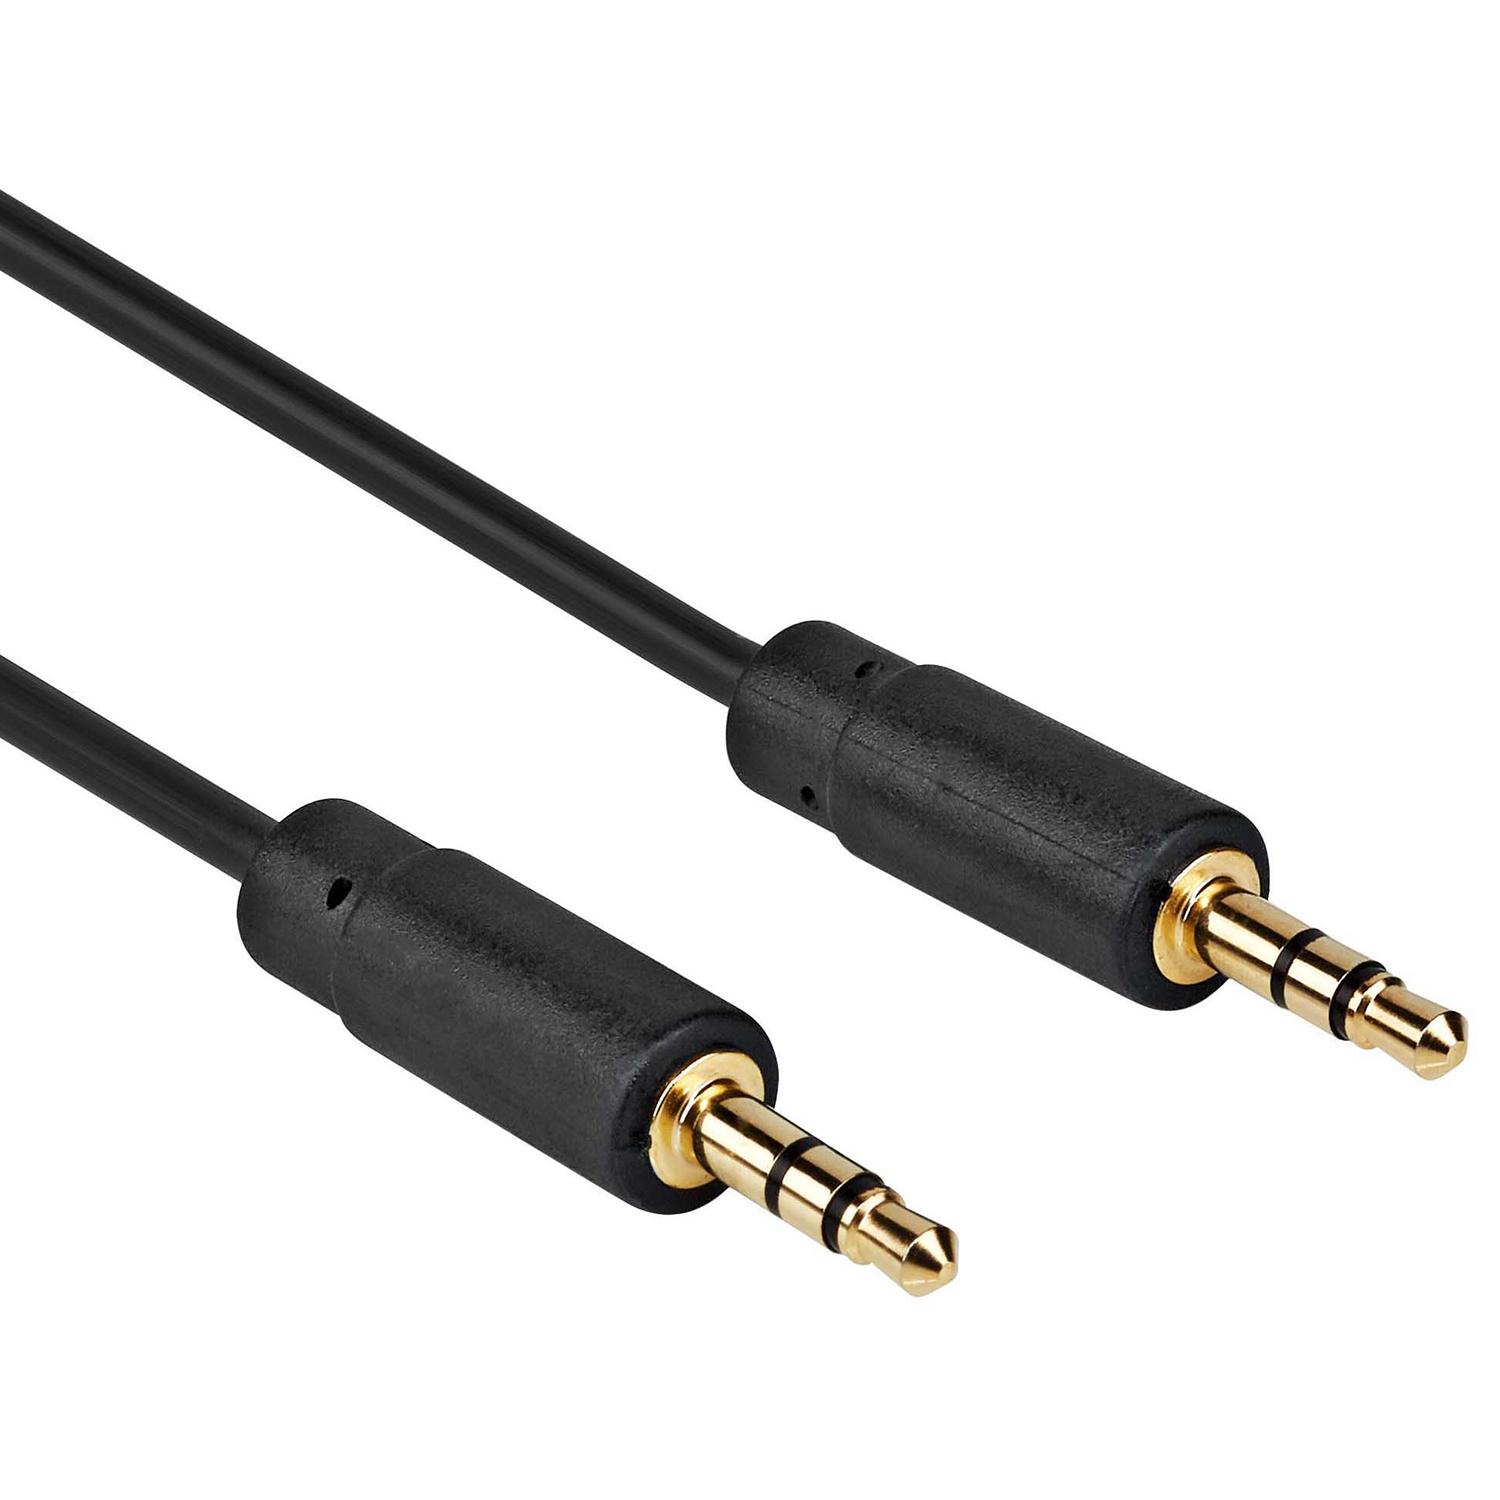 3.5 mm stereo audio kabel 2.00 m - Deze 3,5 male naar 3,5 mm male stereo-audiokabel beschikt over een CCA-kern en heeft een lengte van 2,00 m.